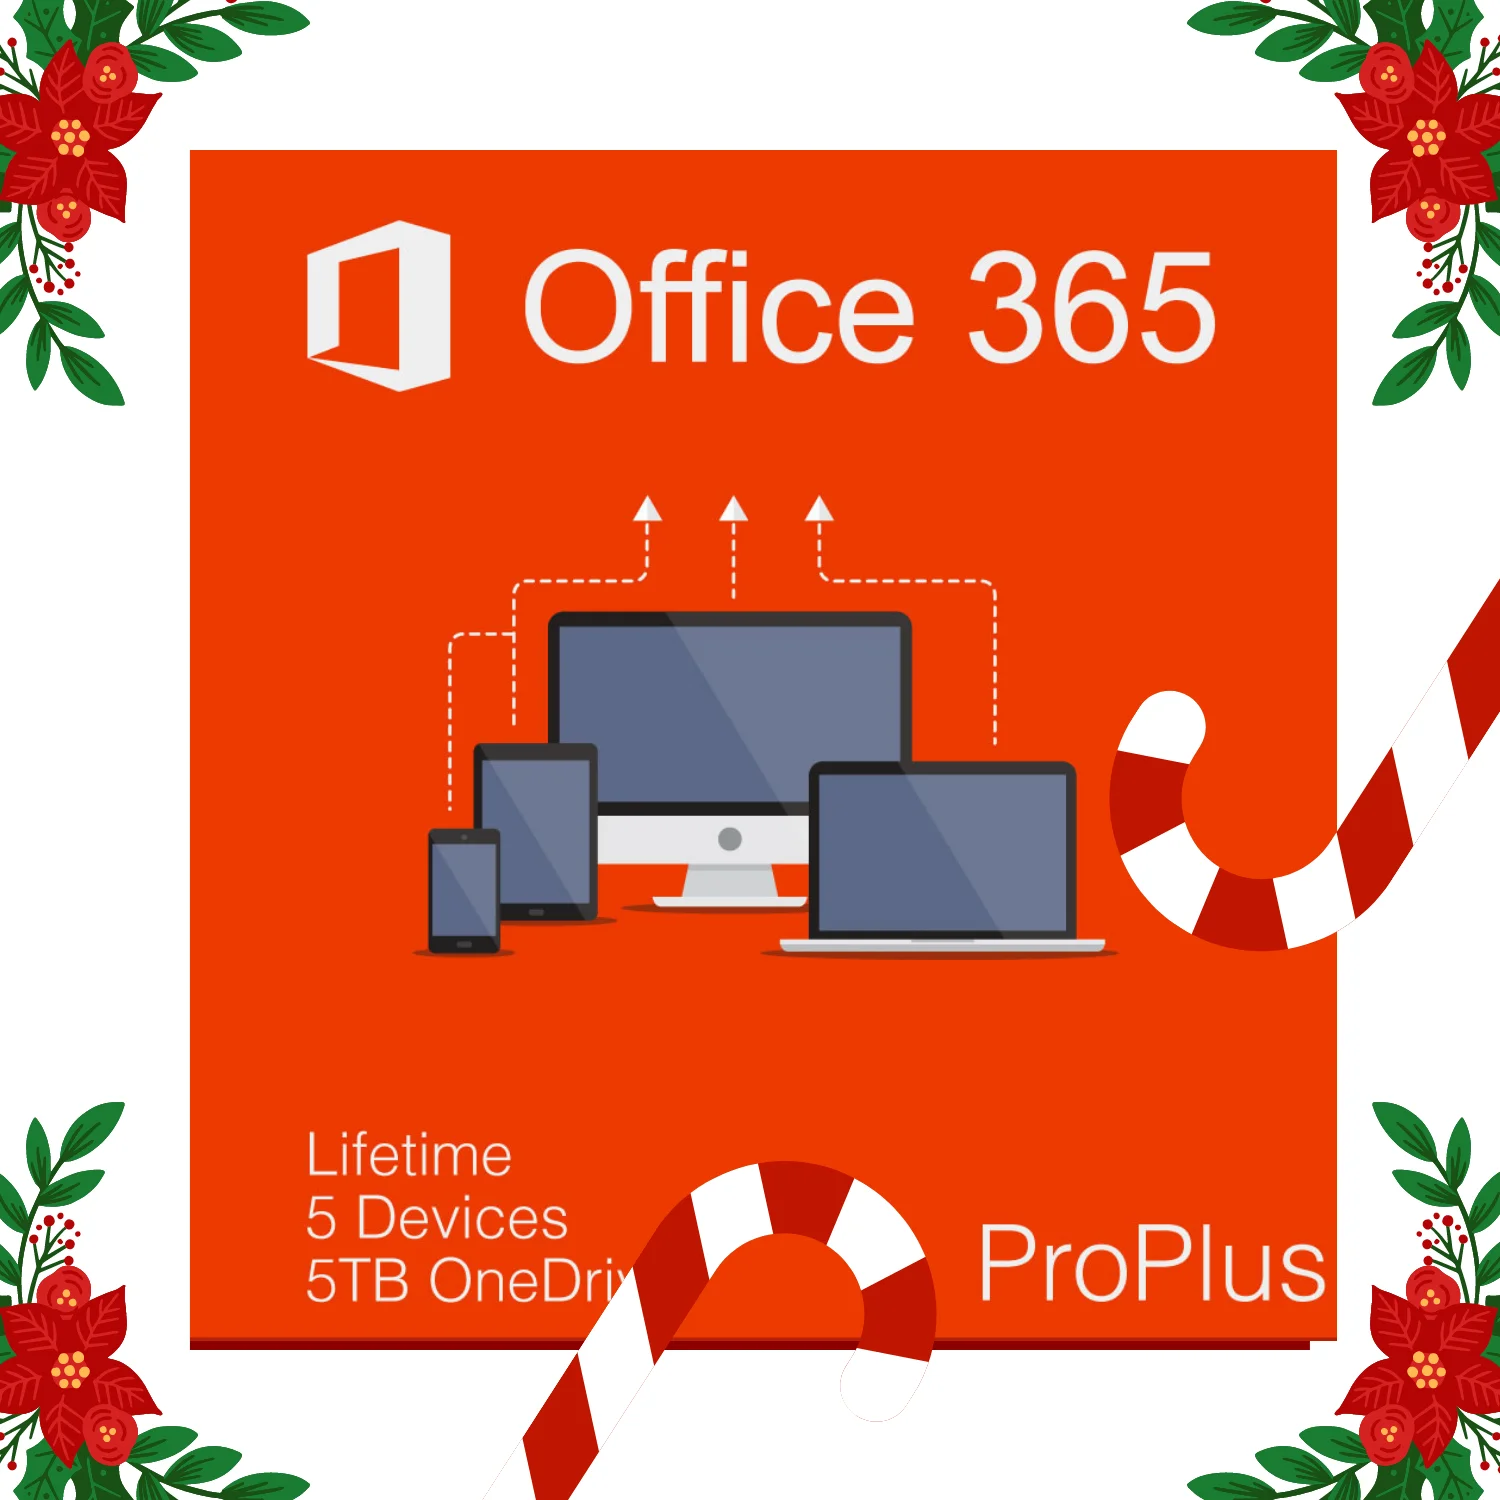 

{Office 365 Account lifetime 5devices 5tb onedrive -Read Description-}